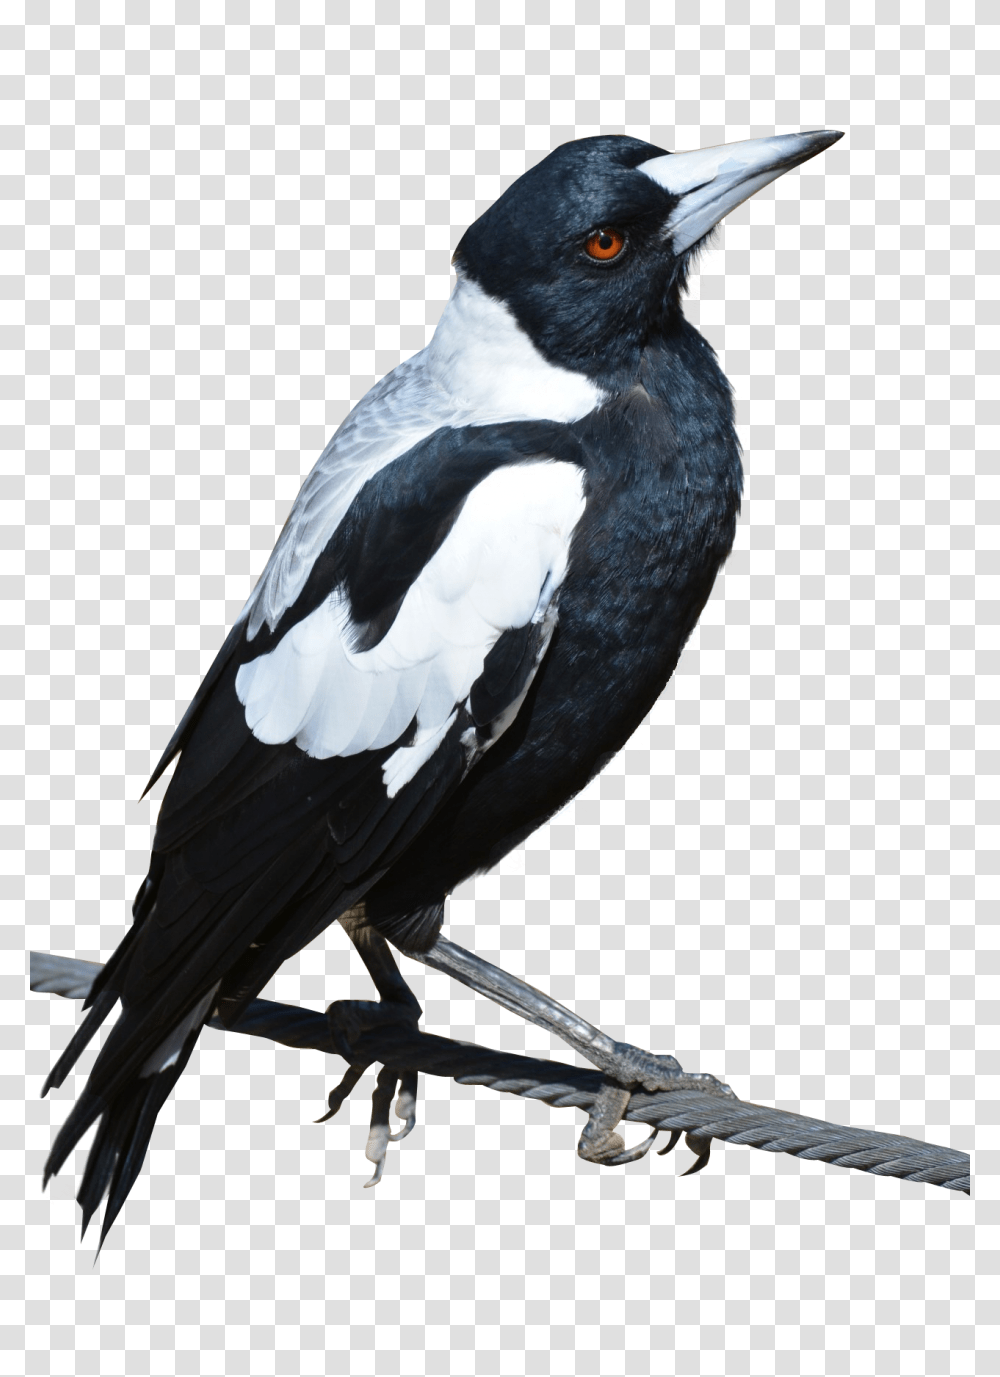 Magpie Bird Image Purepng Free Cc0 Magpie, Animal, Blackbird, Agelaius, Beak Transparent Png